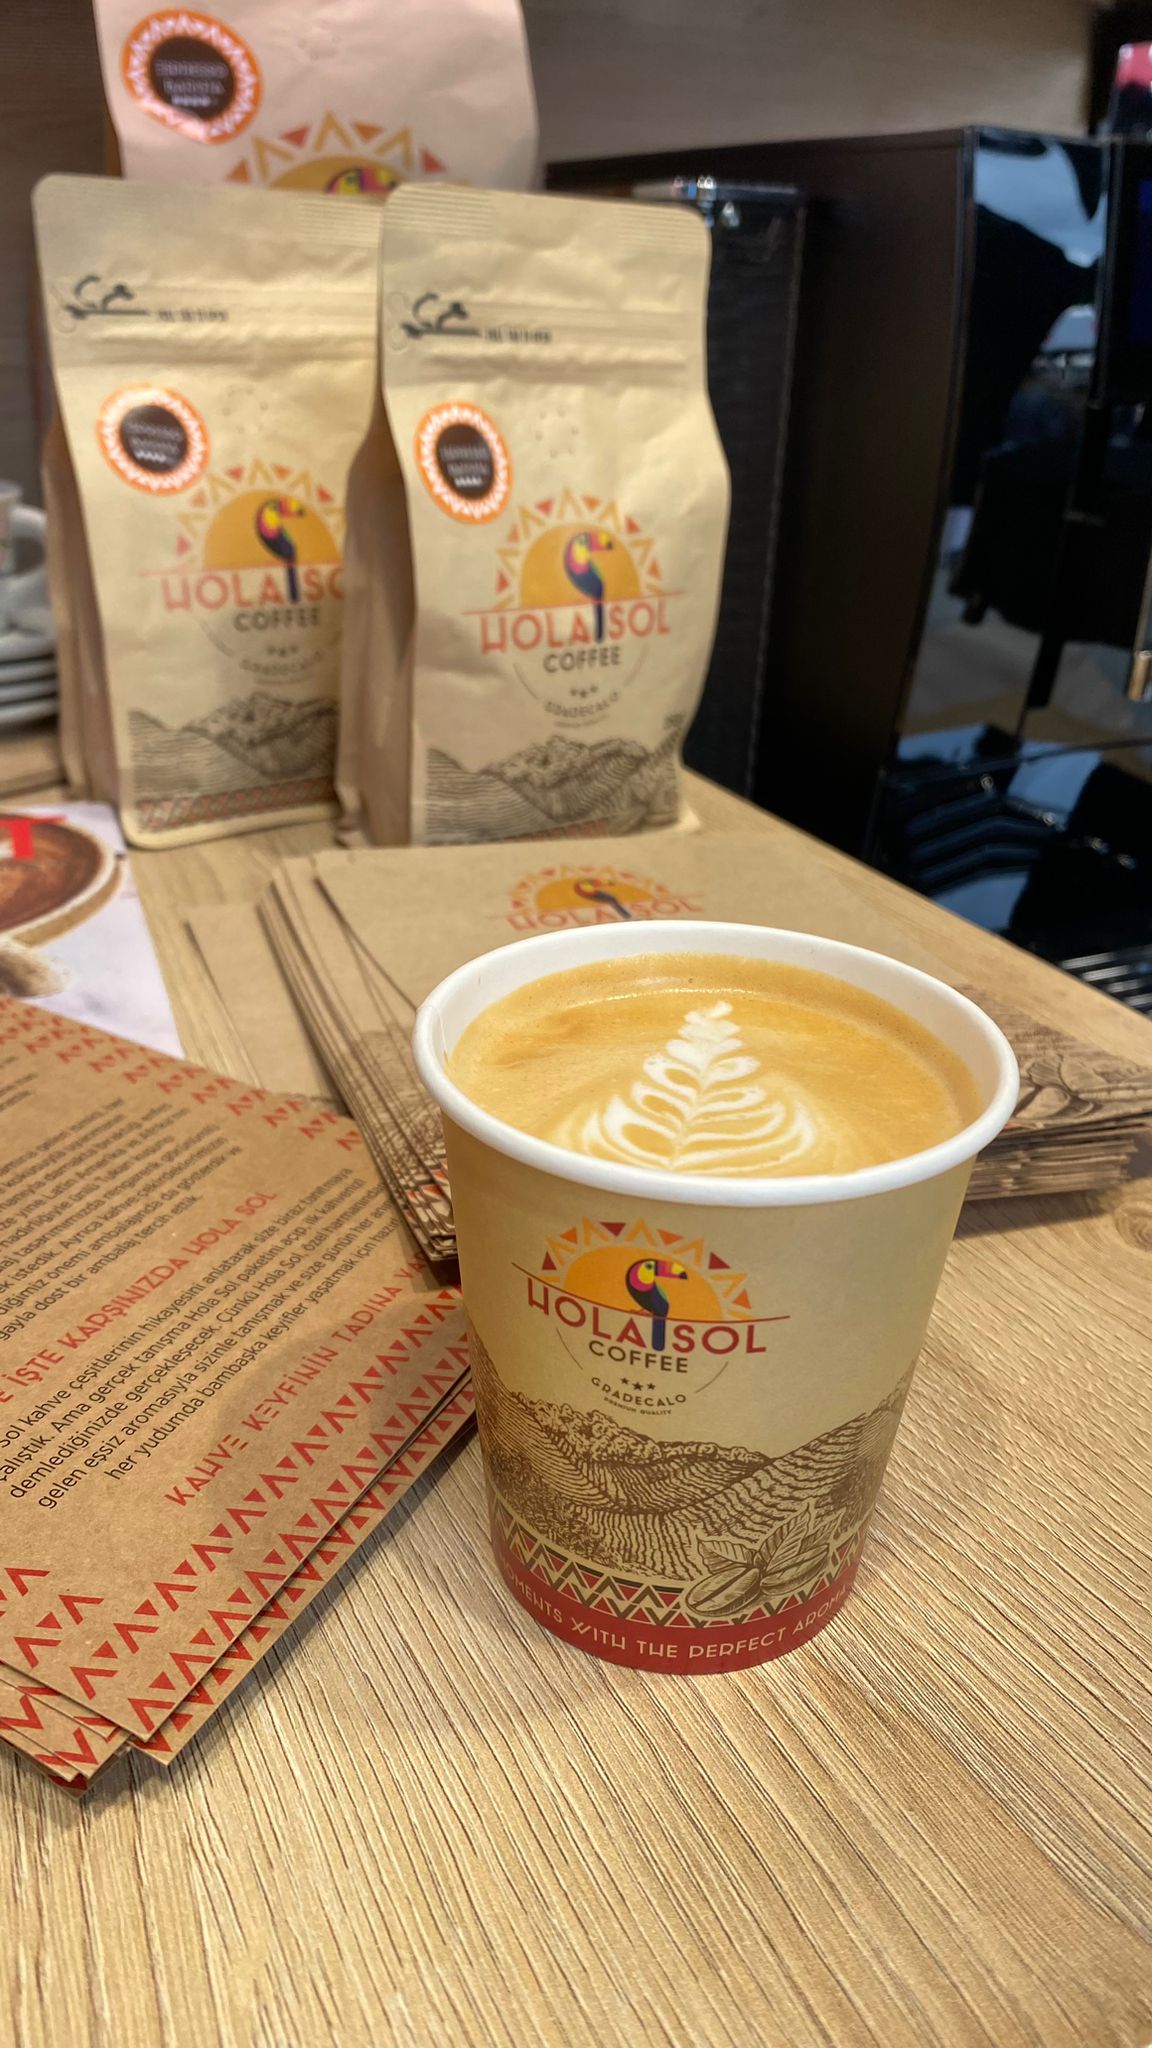 Enplus Kahve Festivali’nde yeni kahve markası Hola Sol’ü tanıttı